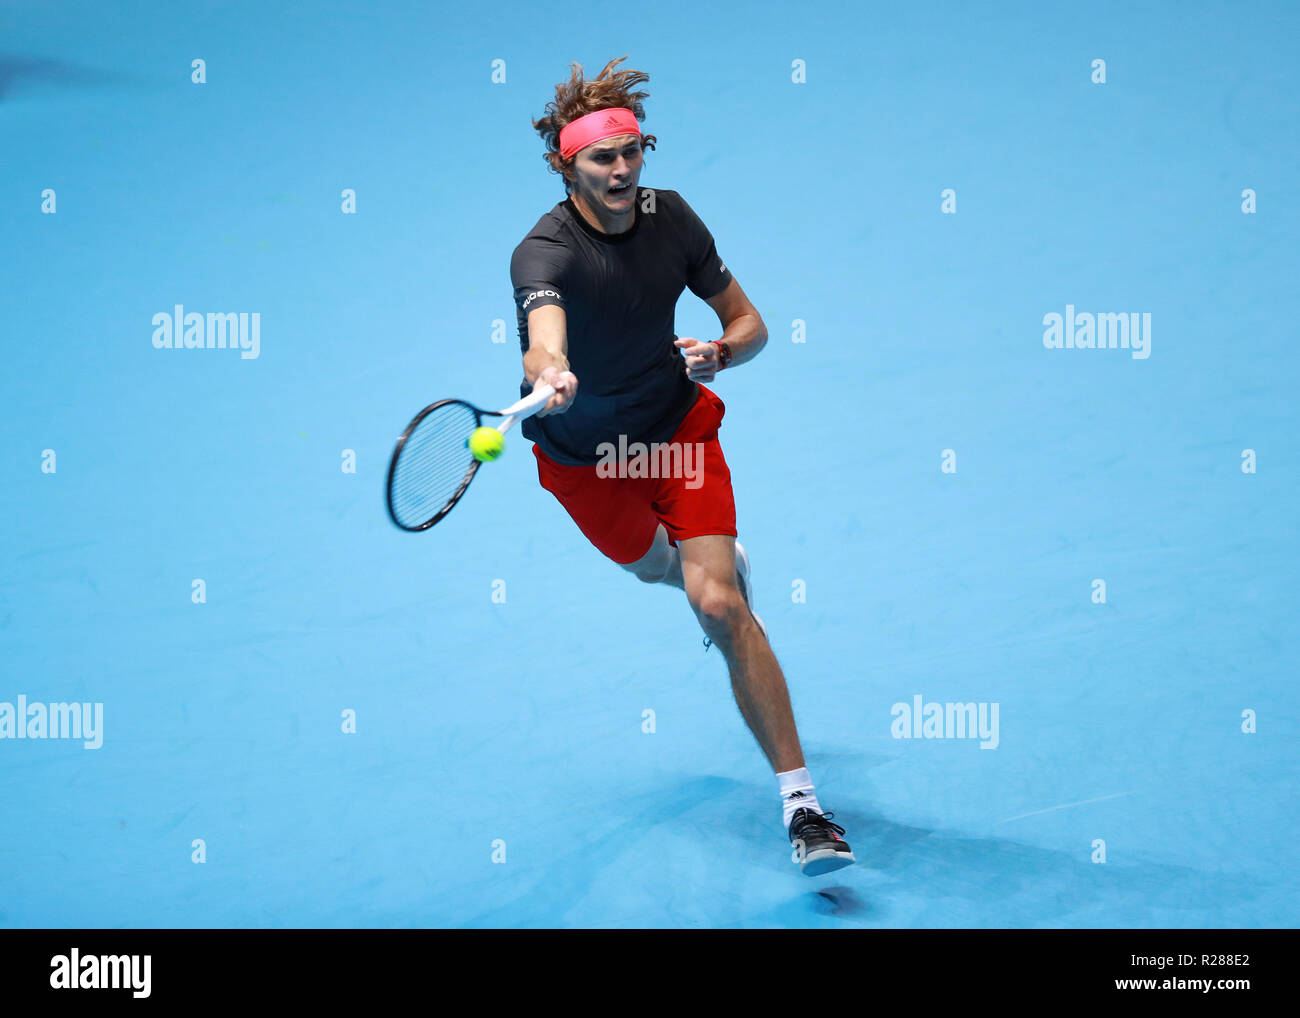 17 novembre 2018, O2 Arena, London, England ; Nitto ATP Tennis finale ; Alexander Zverev (GER) avec un coup droit tourné dans son match contre Roger Federer (SUI) Banque D'Images